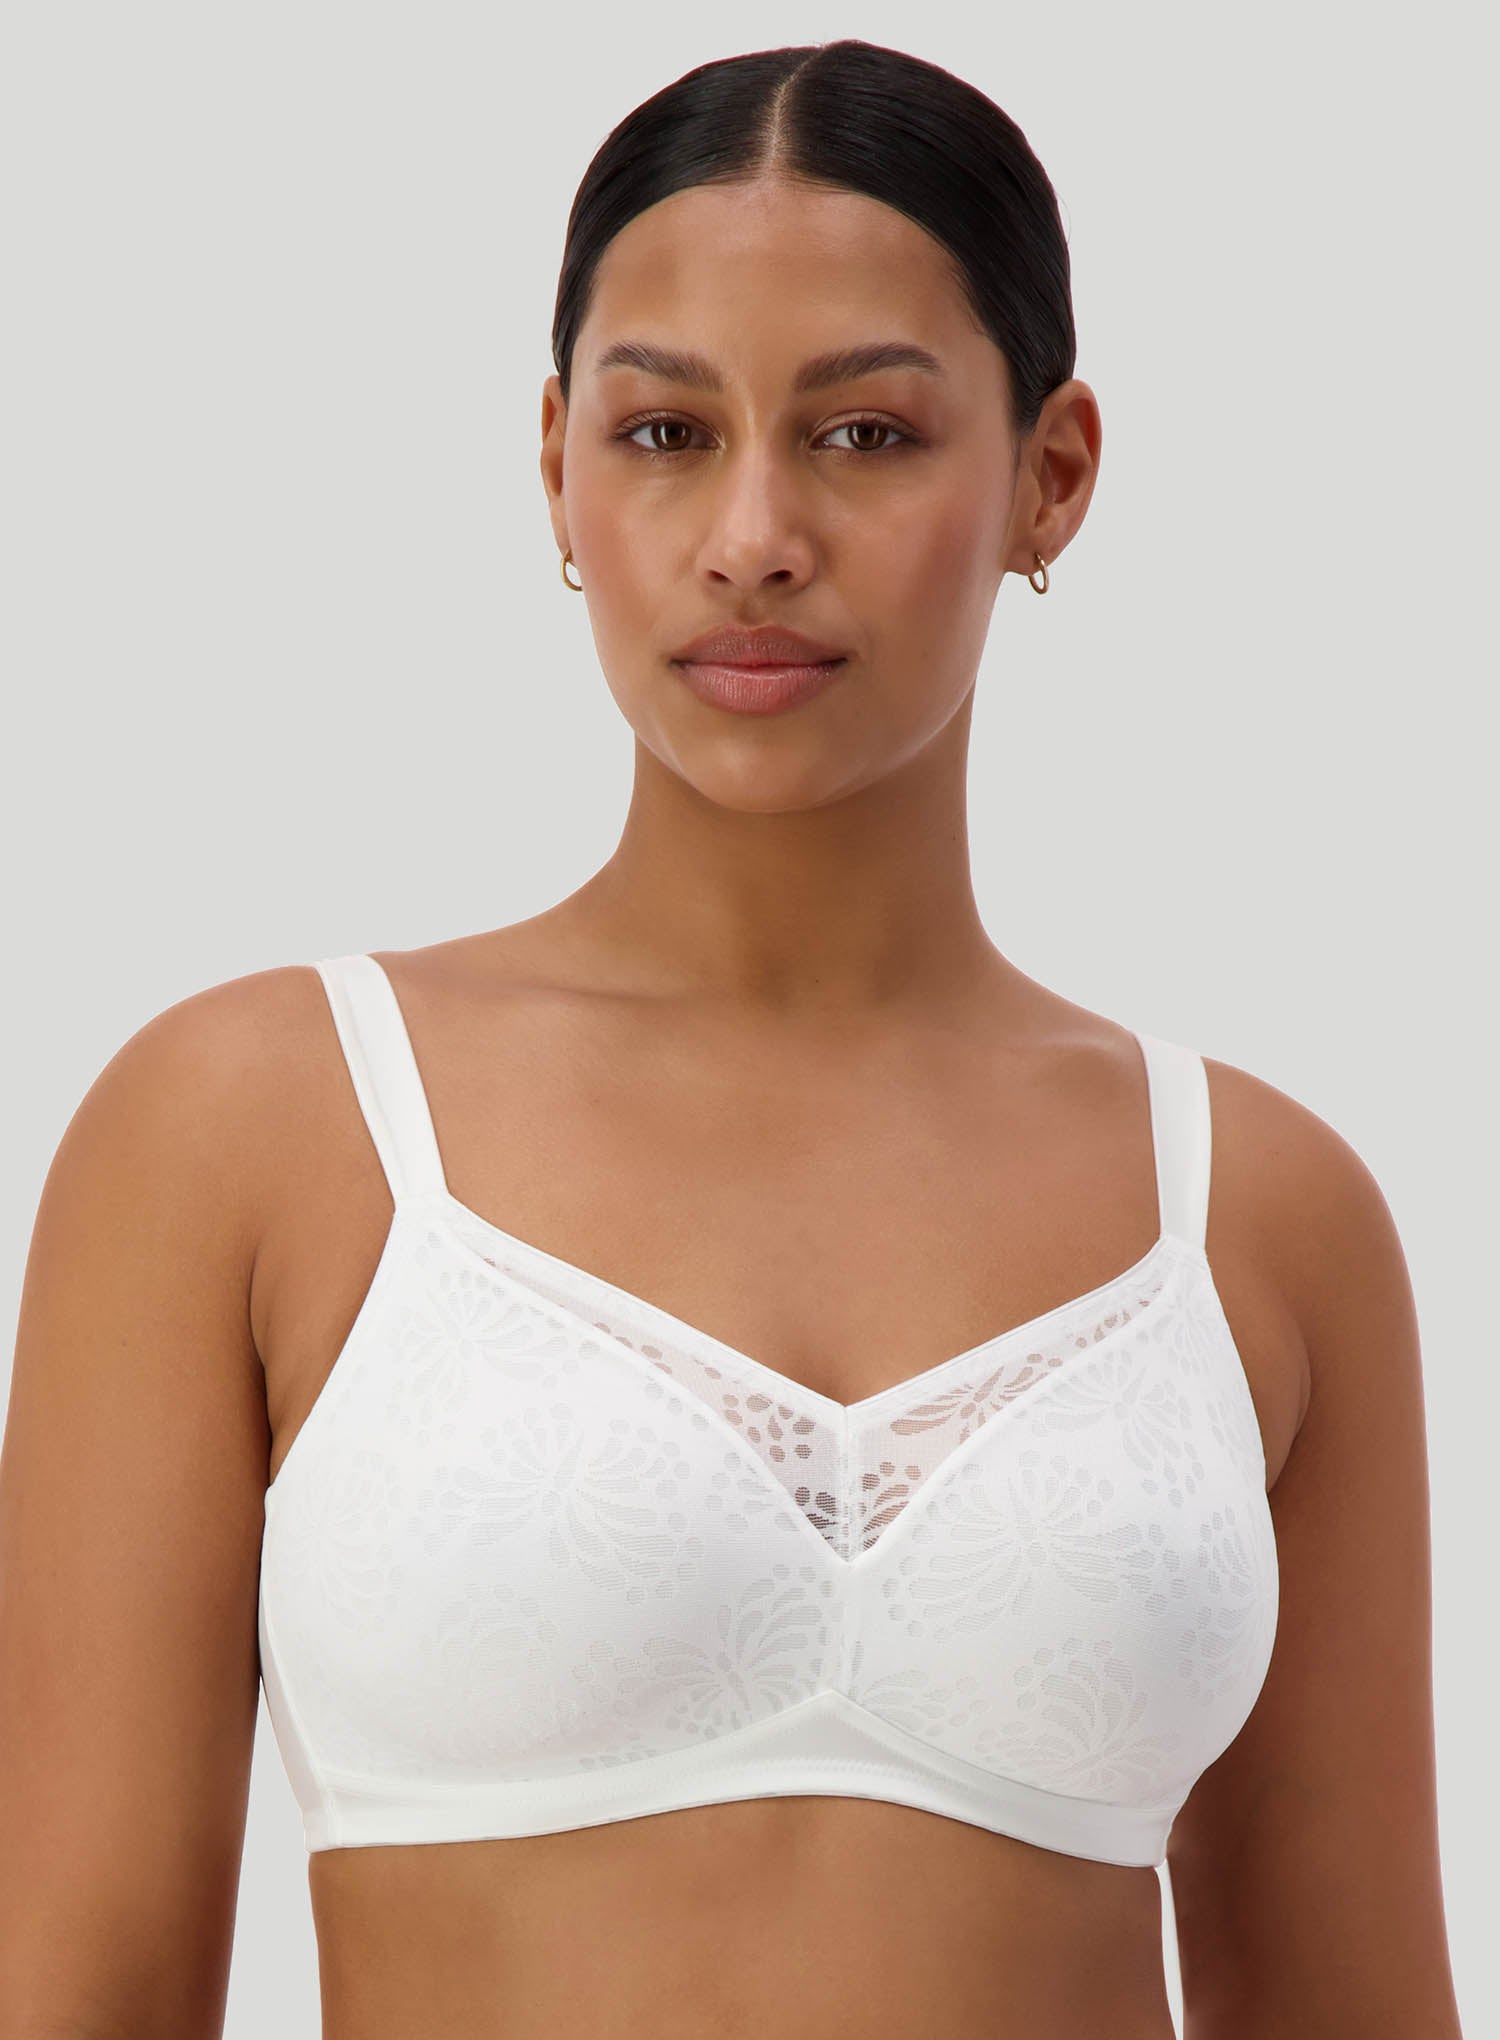 Best Wire Free Bras For Australian Women with Large Breasts – DeBra's